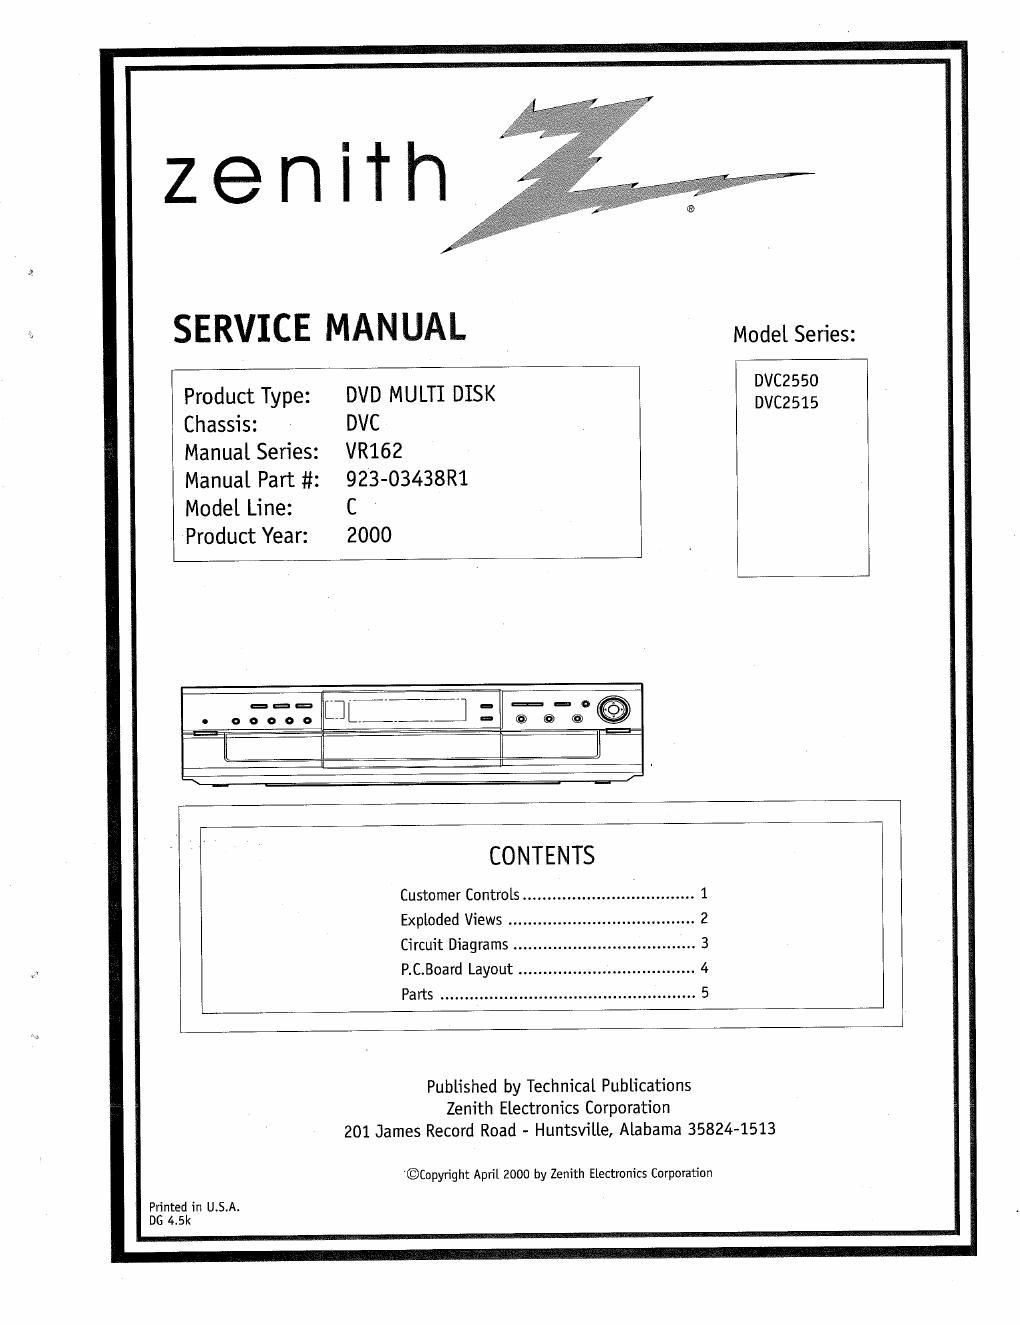 zenith dvc 2515 service manual